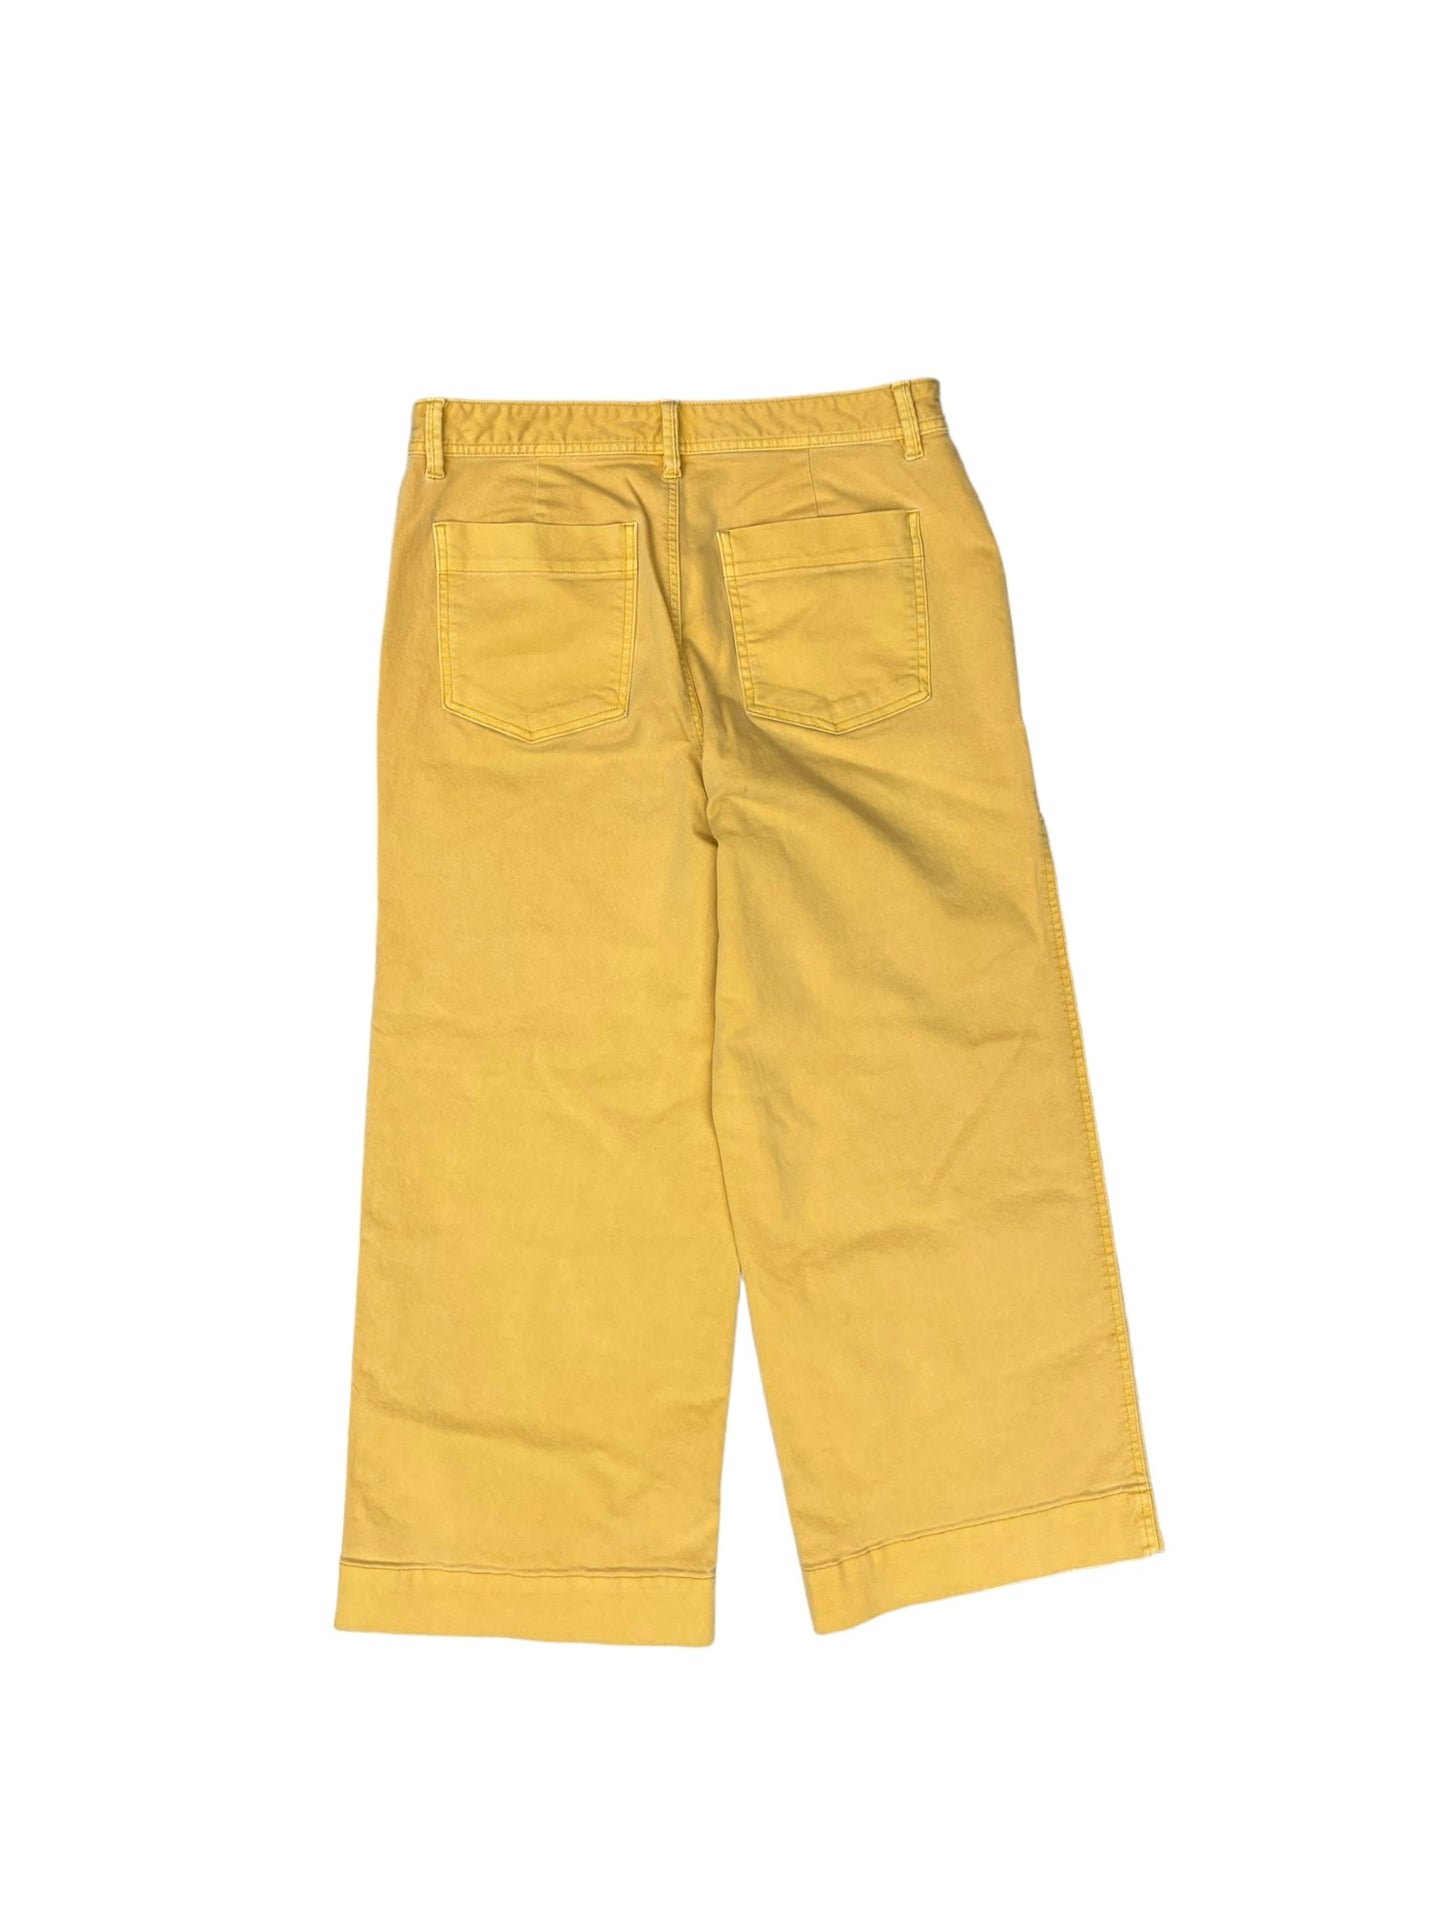 Yellow Jeans Wide Leg Gap, Size 12